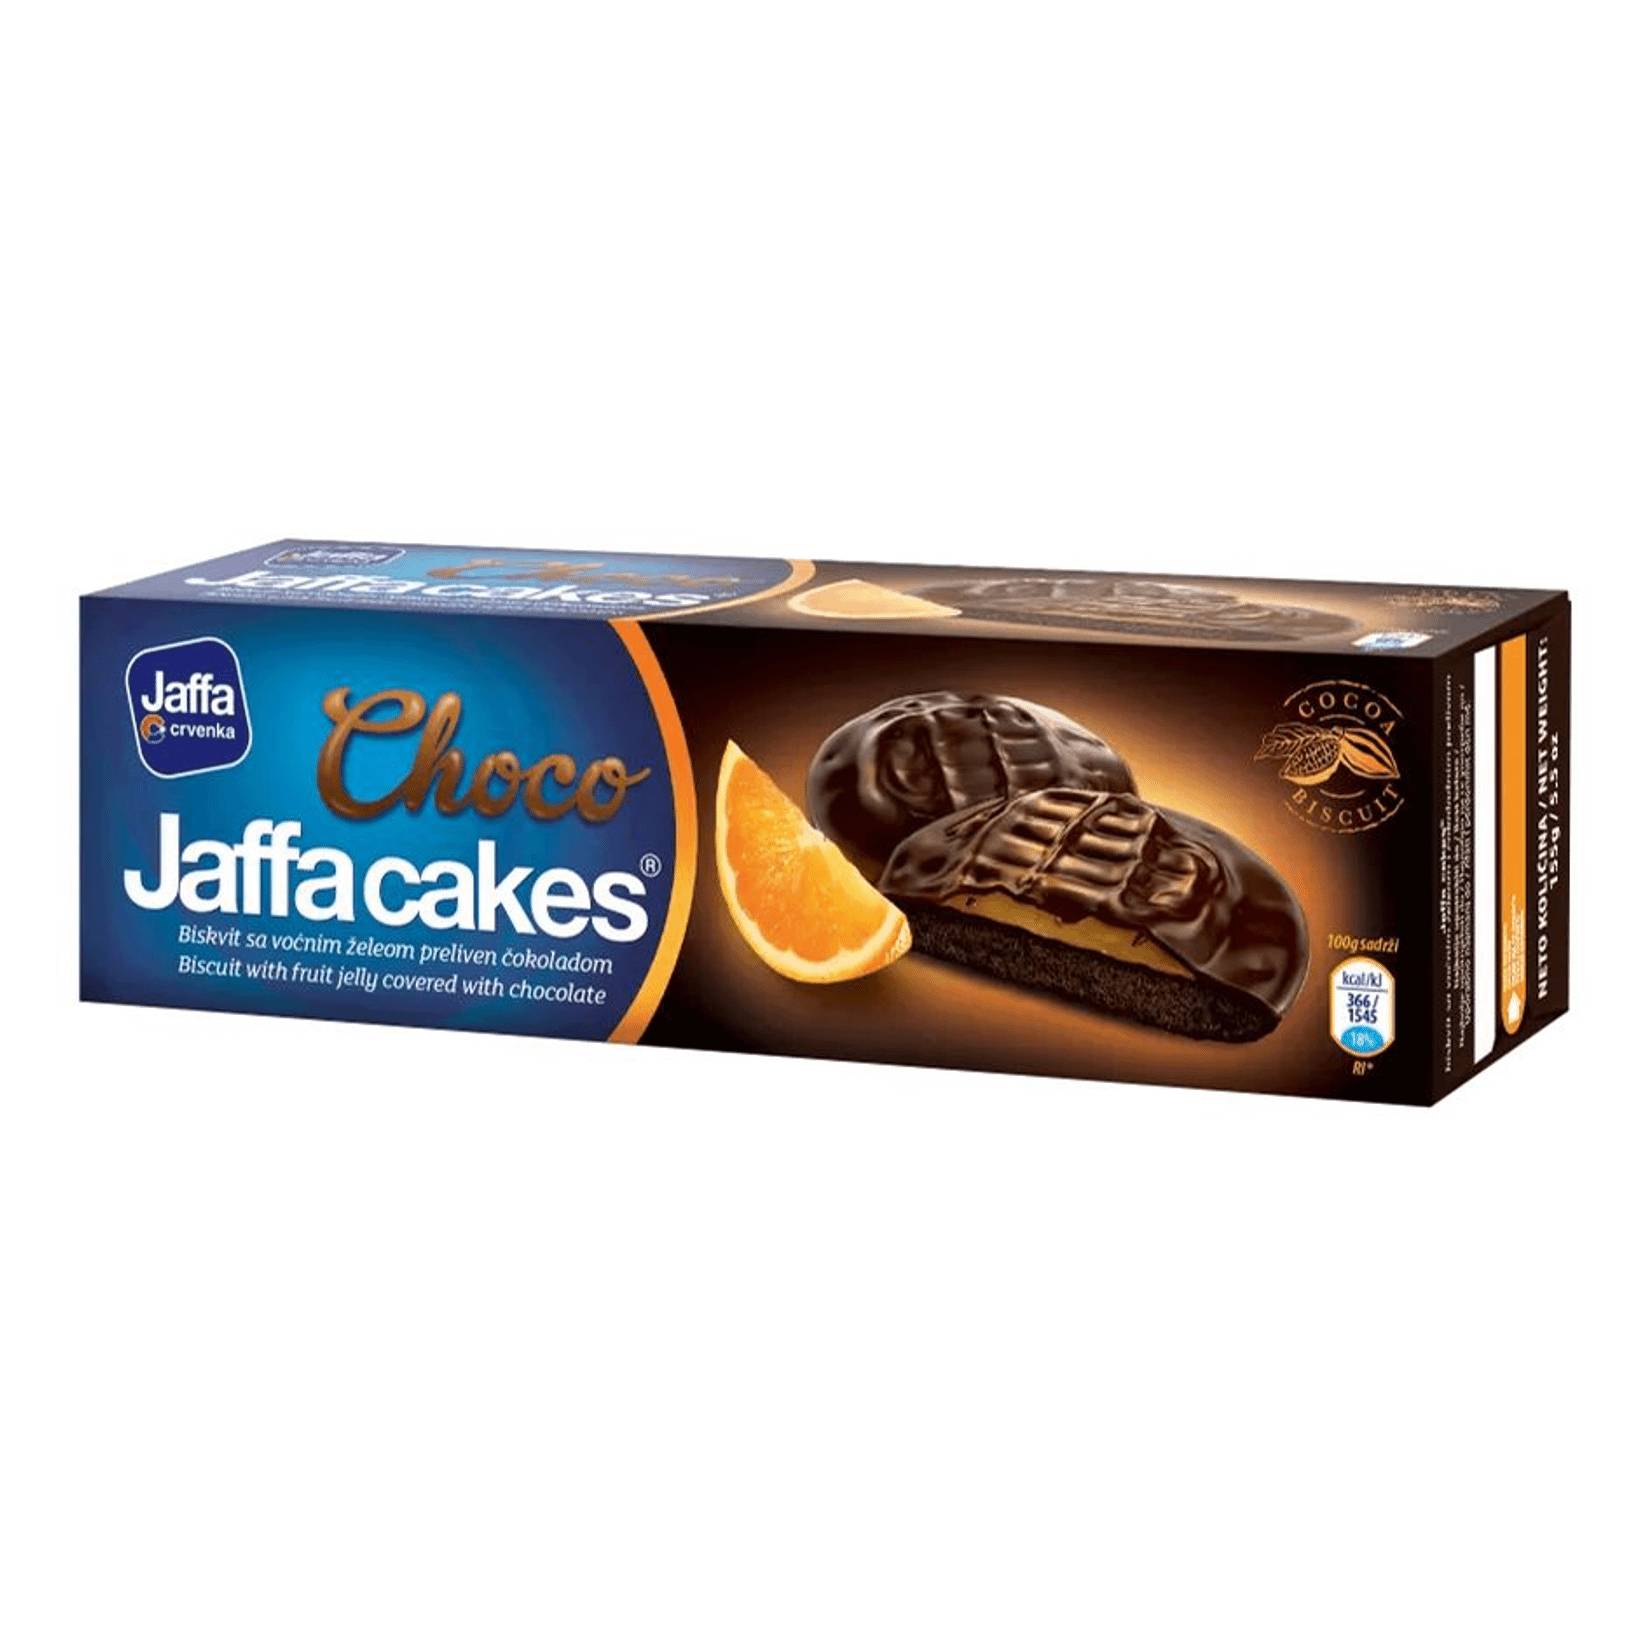 Печенье бисквитное Jaffa апельсин в шоколаде, 158 г суфле casali манговое в шоколаде 150 гр